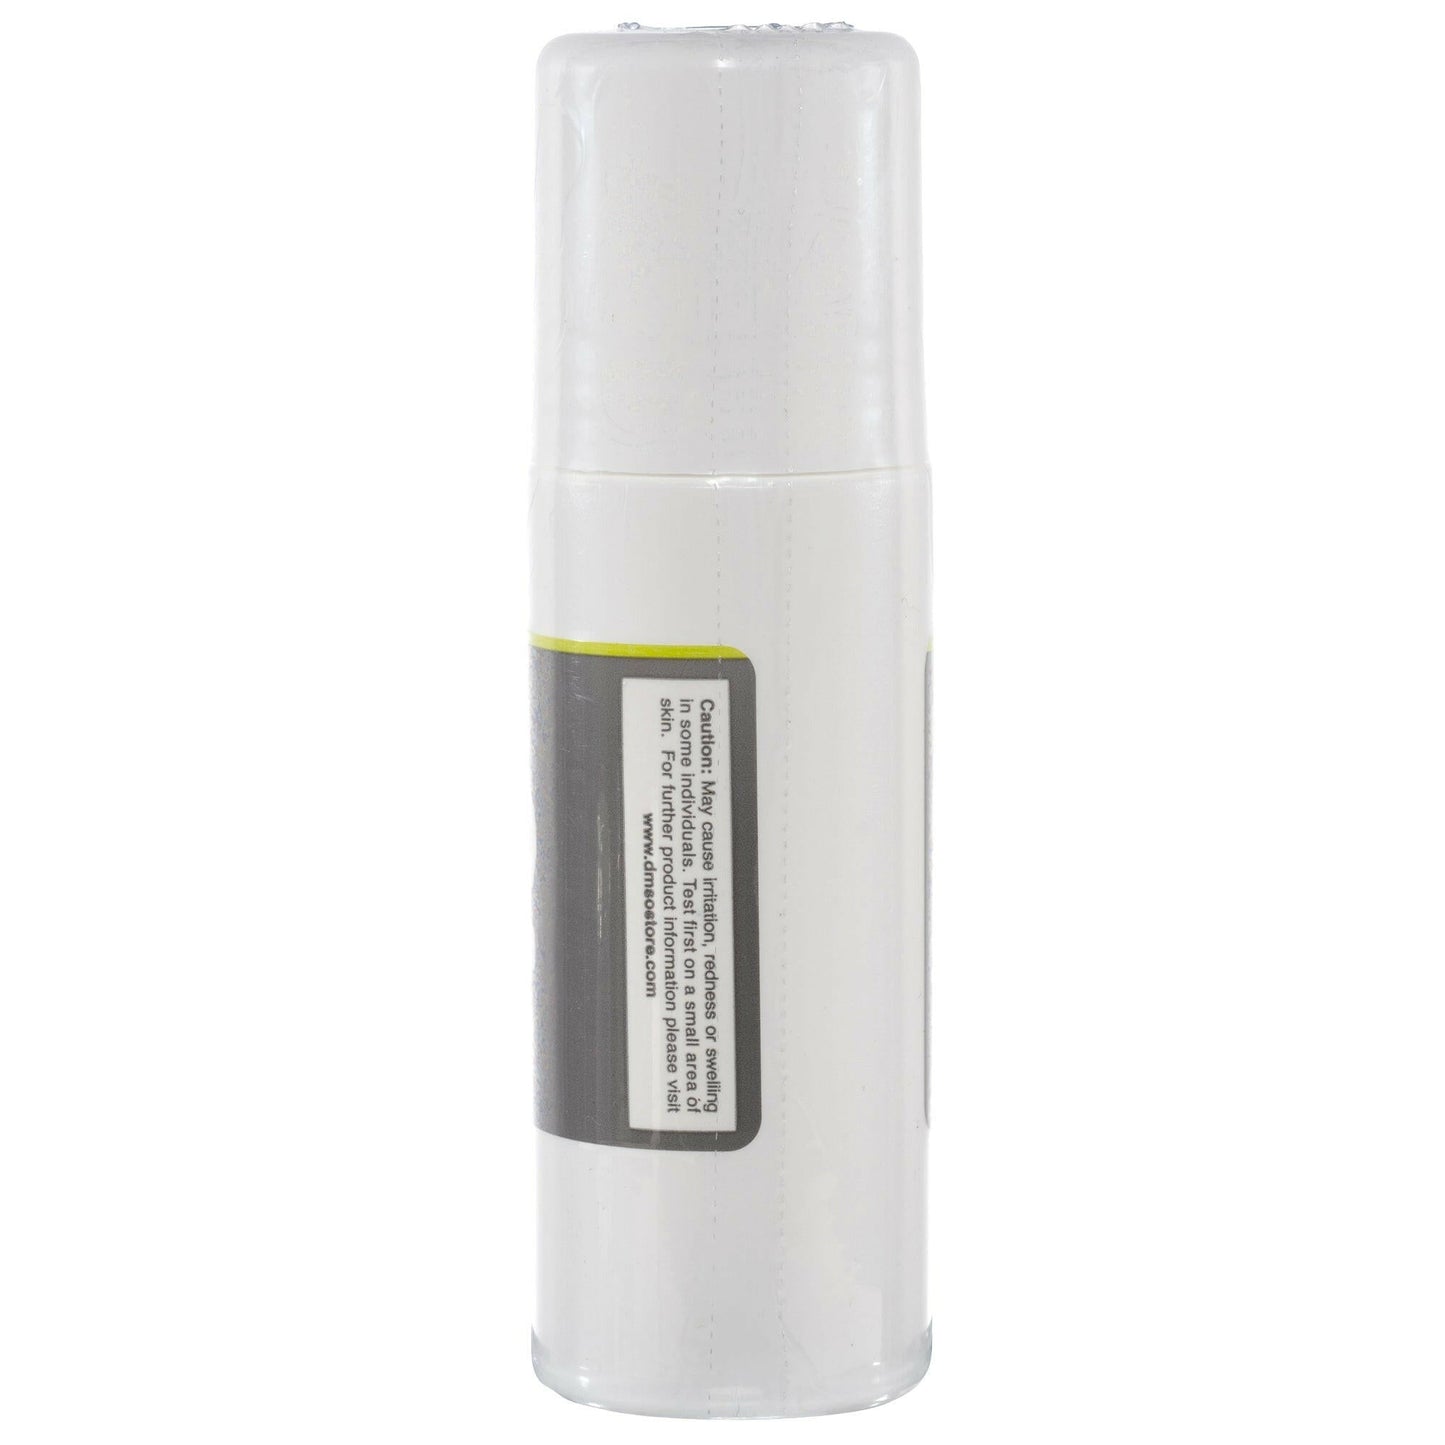 DMSO 70/30 3 oz. Aloe Vera Roll-on Super Biologic 99.995% Low Odor Pharma Grade in BPA Free Plastic - dmsostore